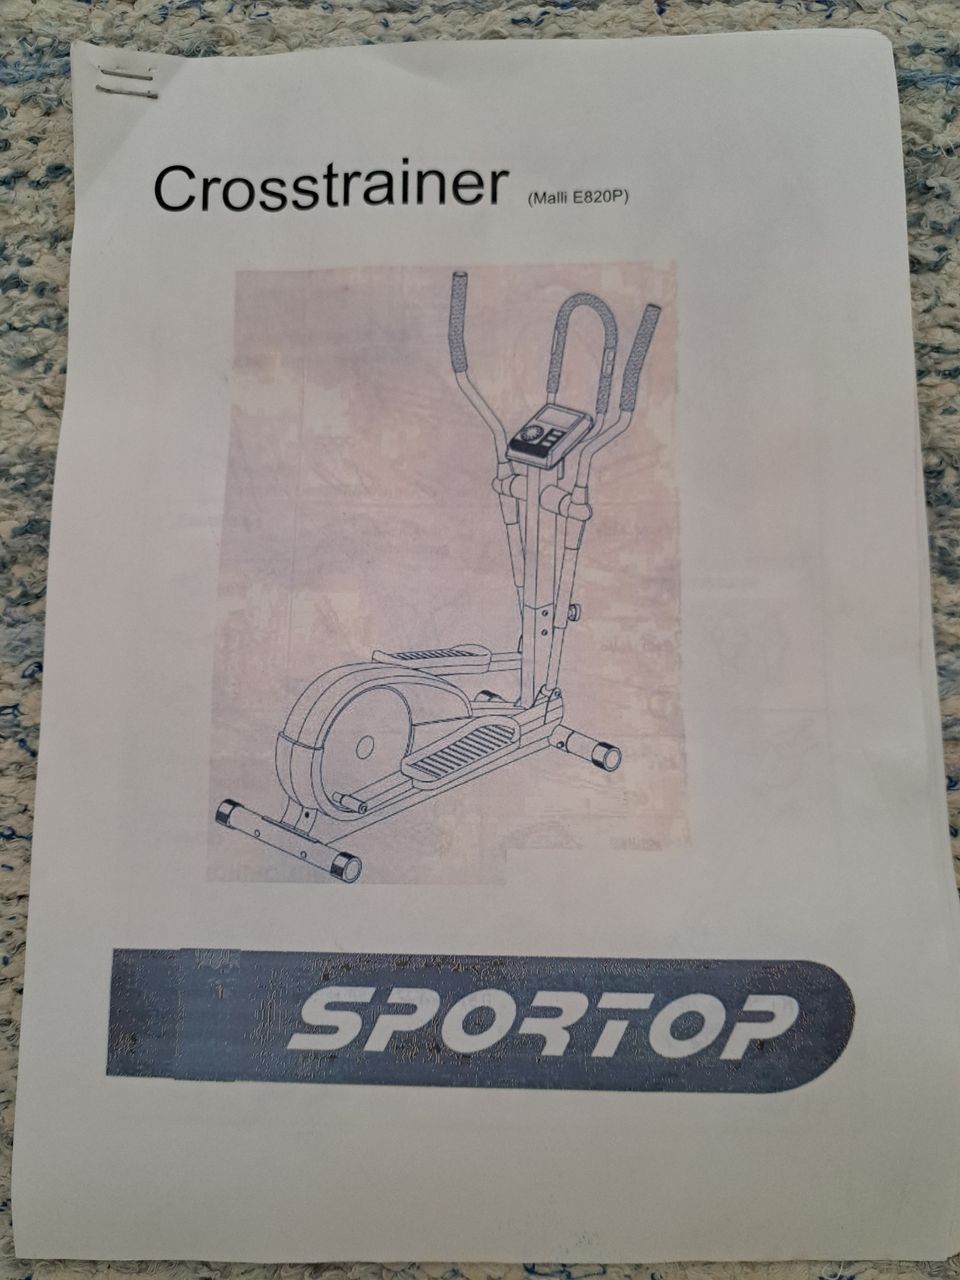 Crosstrainer Sportop